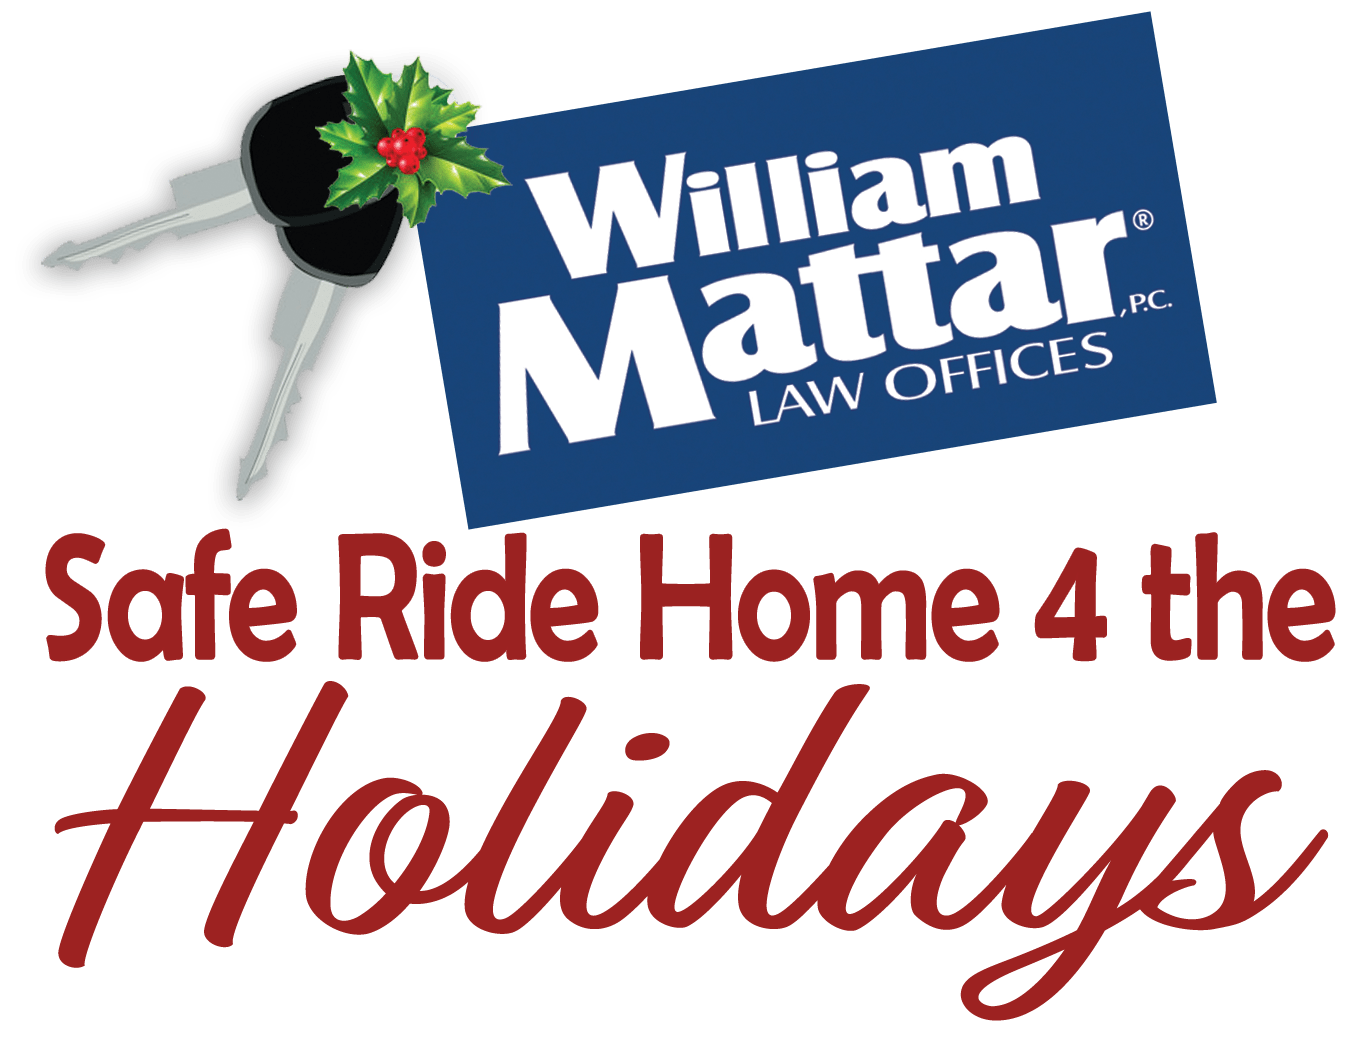 William Mattar Safe Ride Home 4 the Holidays Logo